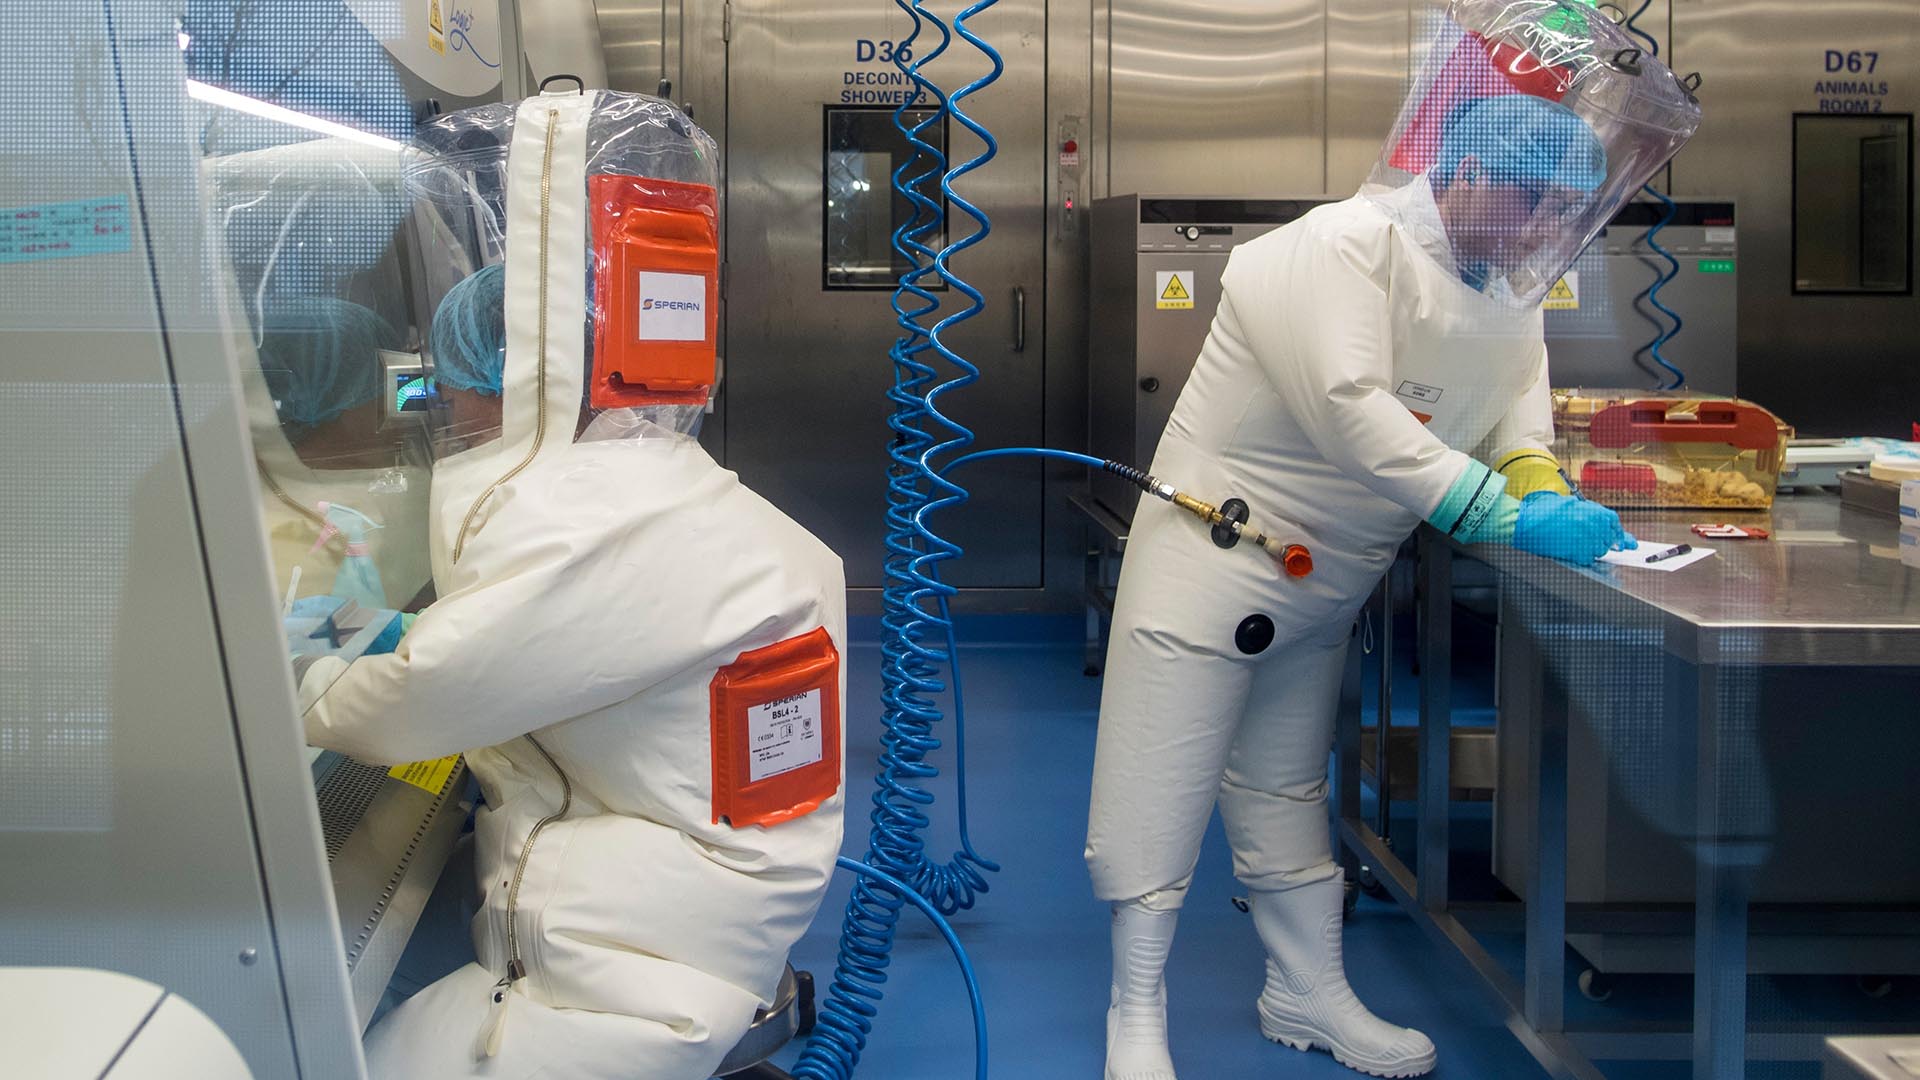 Los laboratorios de alta contención en todo el mundo que realizan investigaciones científicas potencialmente riesgosas están aumentando (Photo by JOHANNES EISELE / AFP)